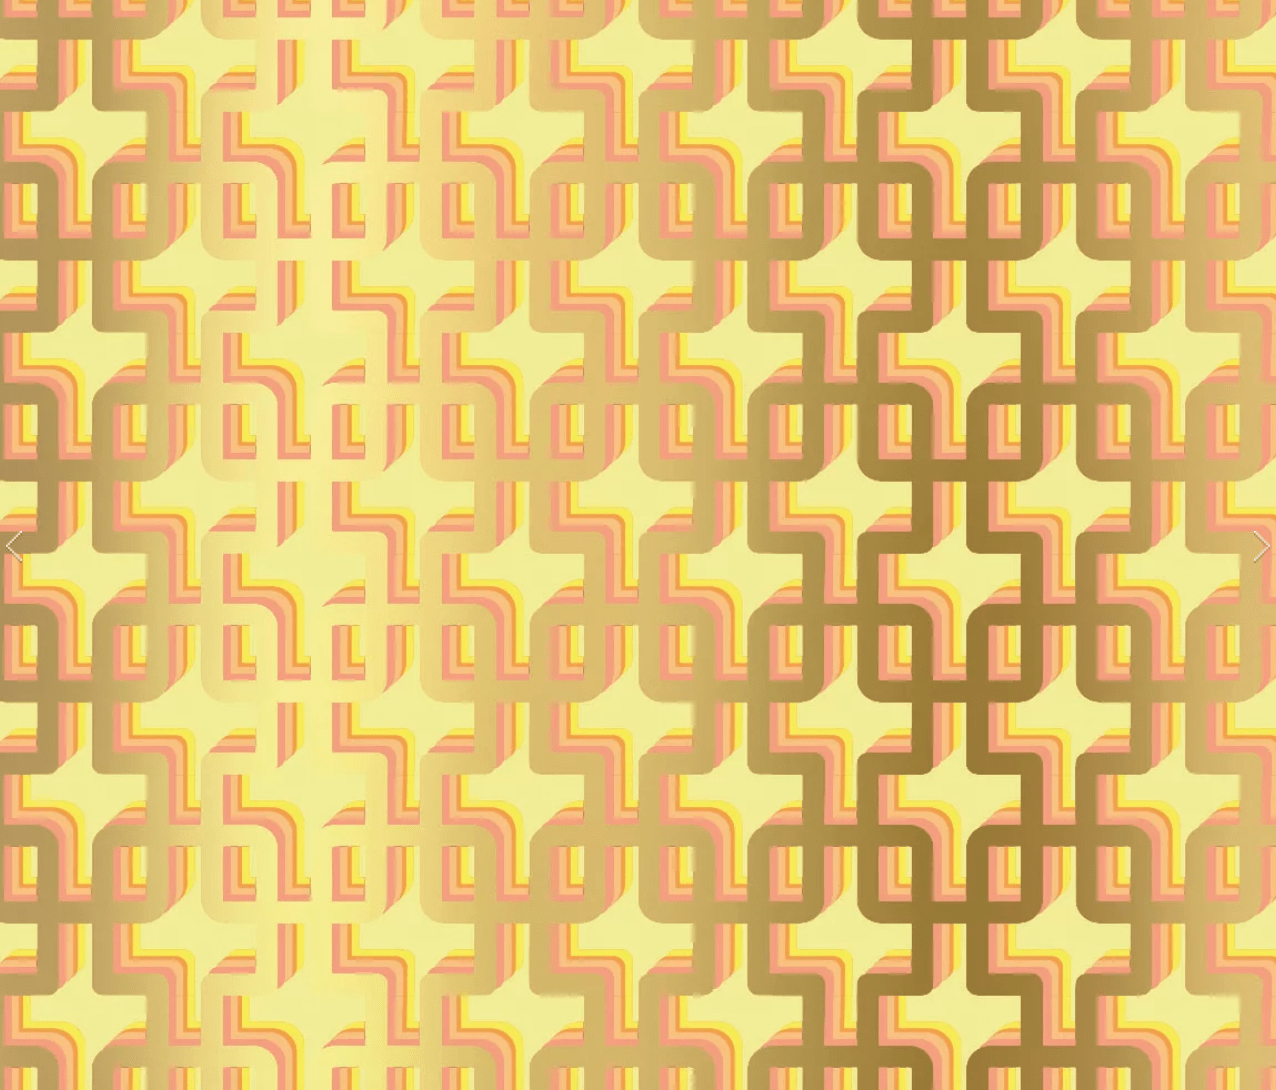 Rouge Absolu - Célia Lobo - Interior - Design - Interior Design - Decor - Home - Decoração - Wallpaper - Papel de parede - Papier-peint - Pop - Colors - Design - Cores - Print Design - Textile Design - Têxtil Design - Estampados - Pattern - Imprimés - Gold - Ouro - Or - Luxe